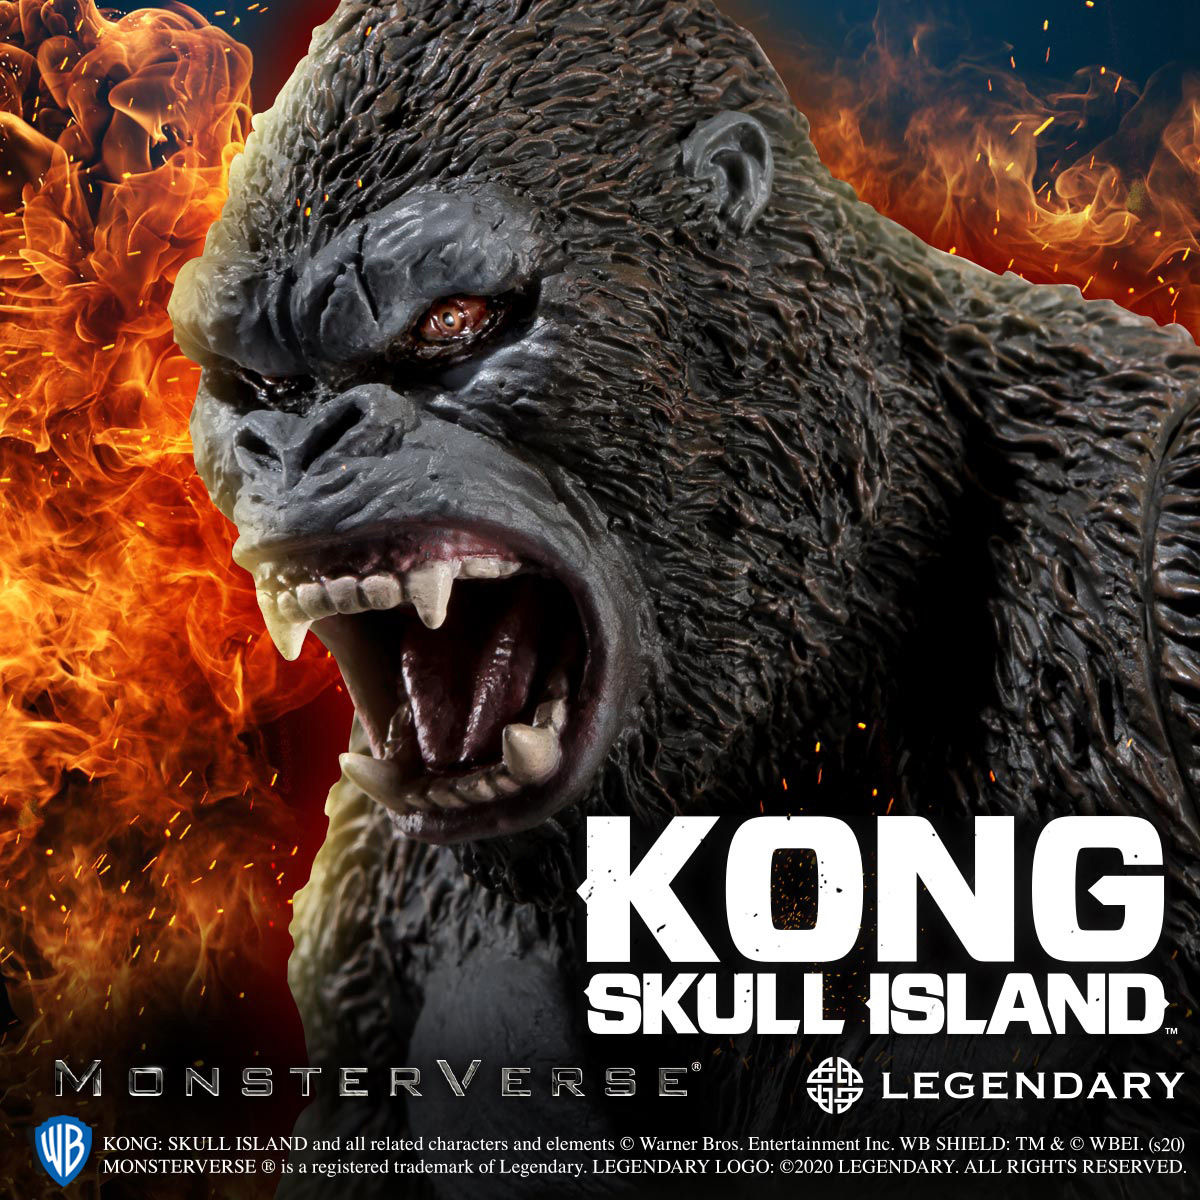 キングコング 髑髏島の巨神 Kong Skull Island ソフビフィギュア バンダイ より年12月発売予定 人気フィギュア安値で予約 トイゲット Blog